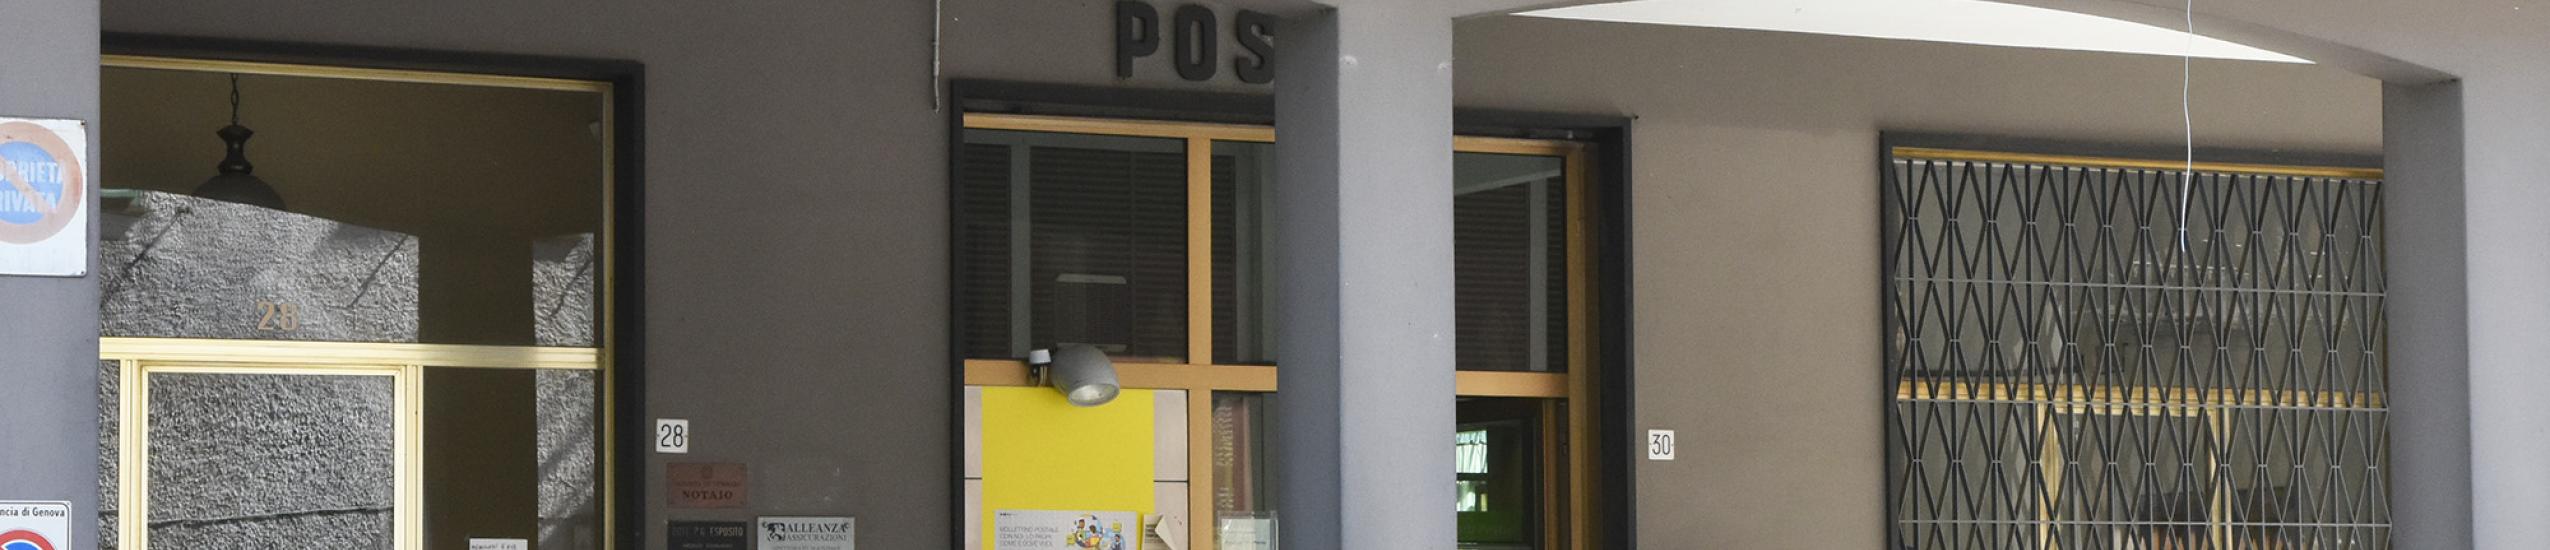 ufficio postale di Cicagna